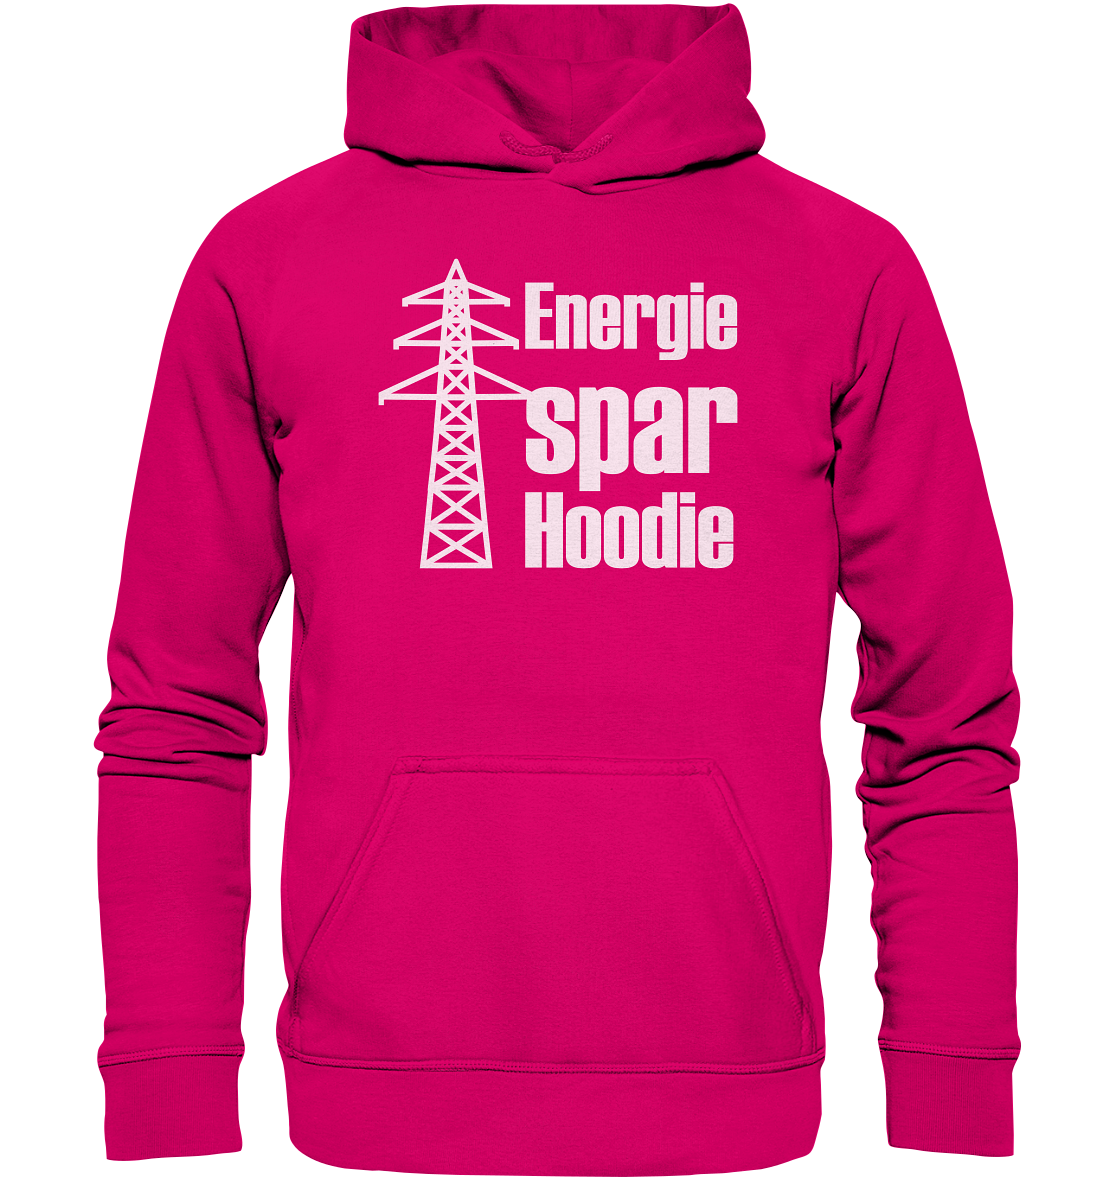 Energiespar Hoodie - Basic Unisex Hoodie